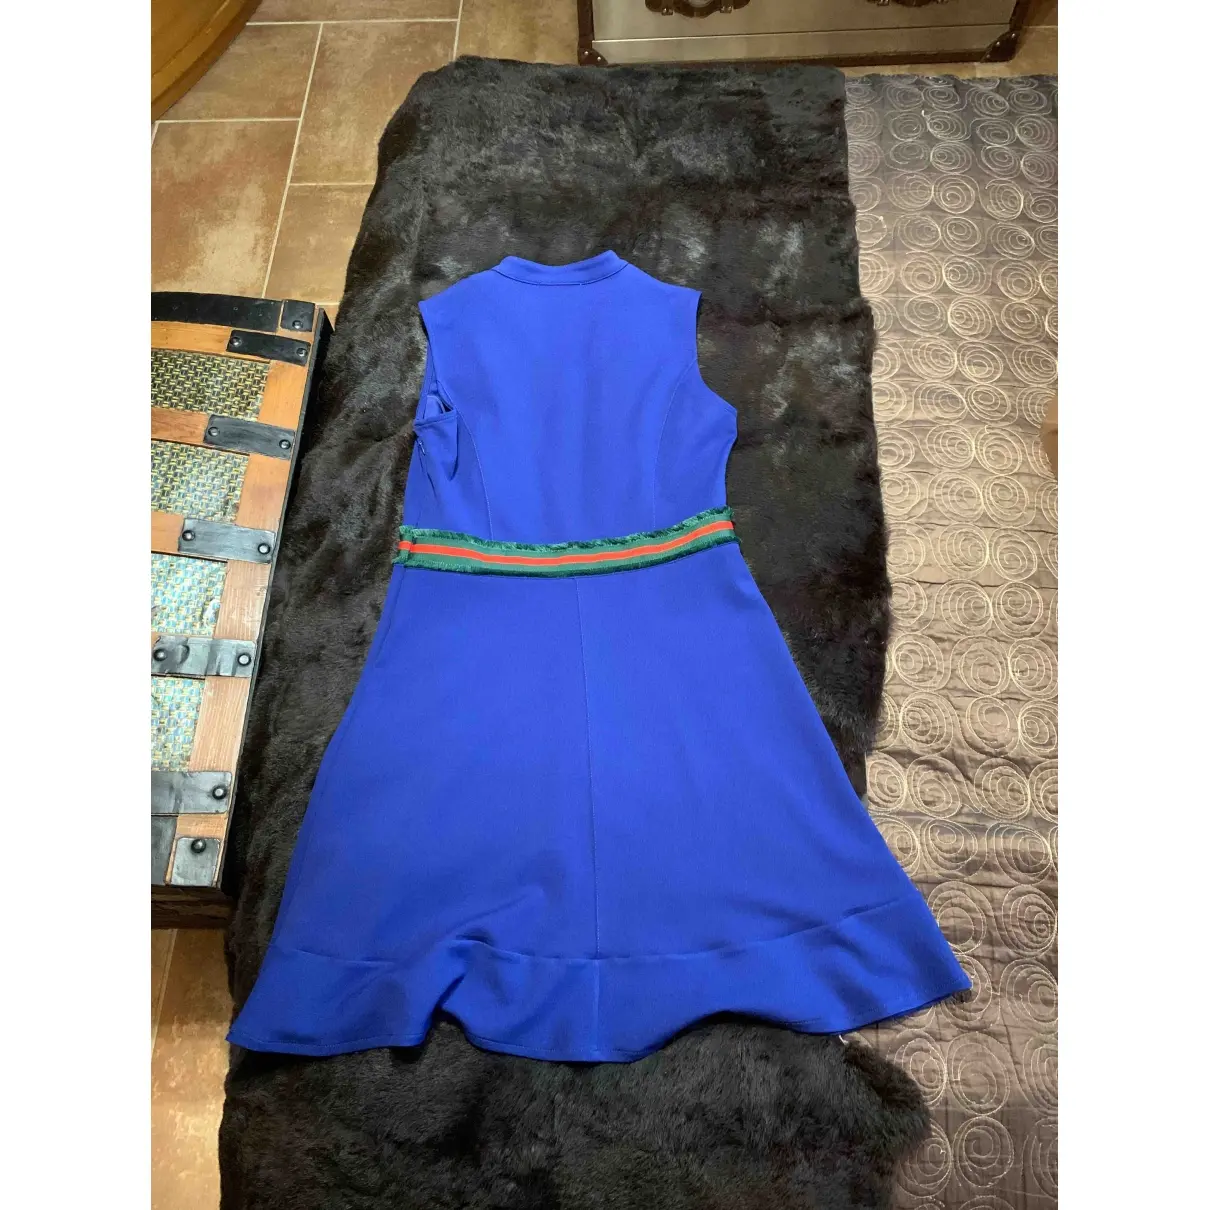 Les Petites Mid-length dress for sale